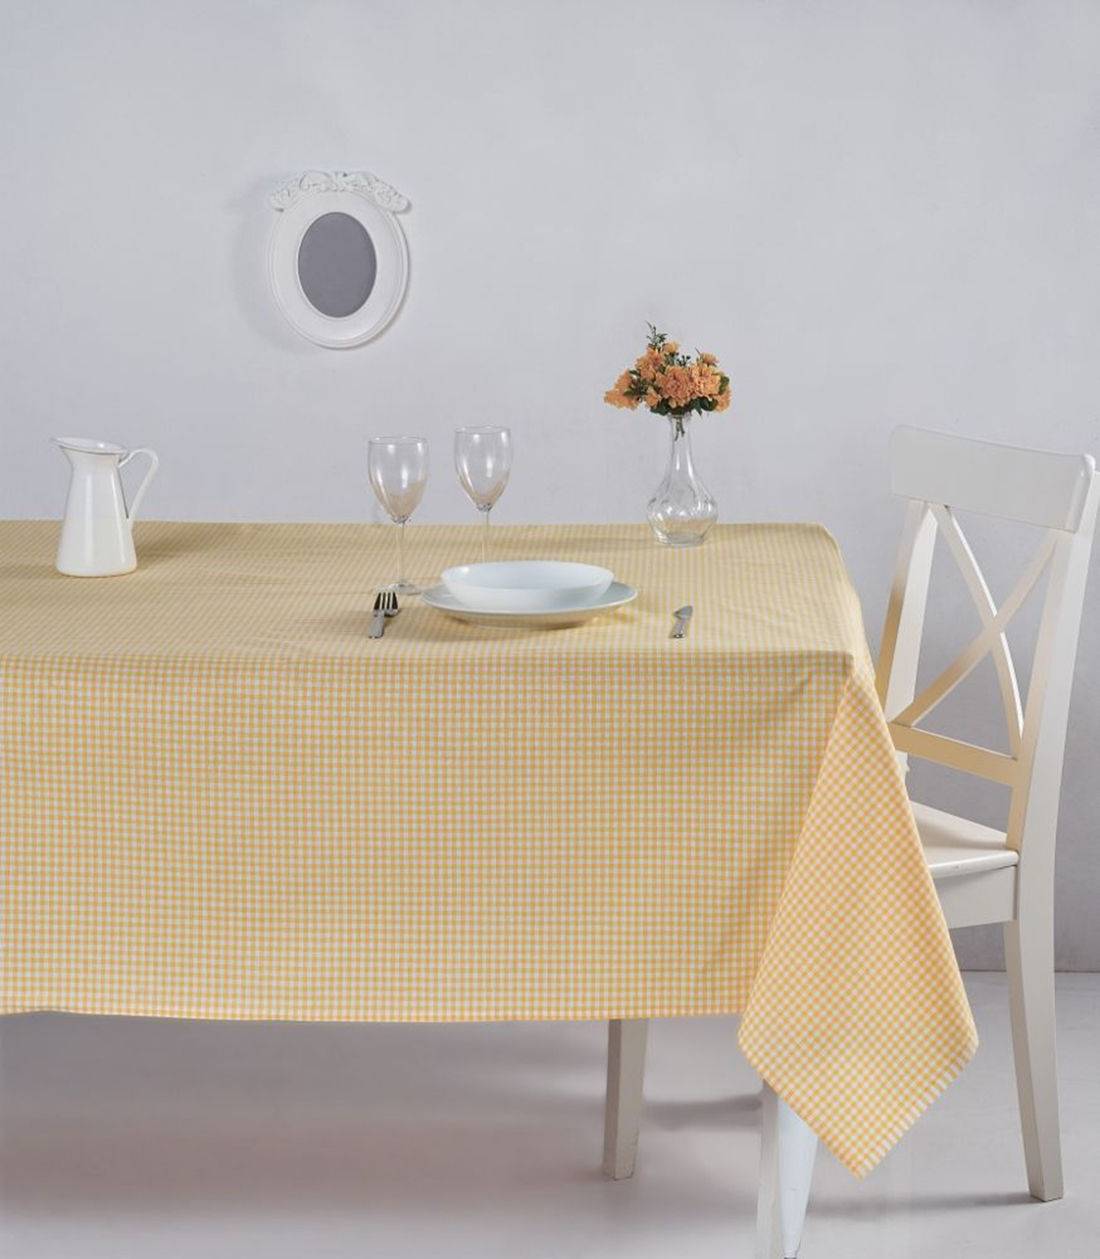 Bertier Tischdecke 170x220cm Baumwolle Muster klein gelb und weiß kariert